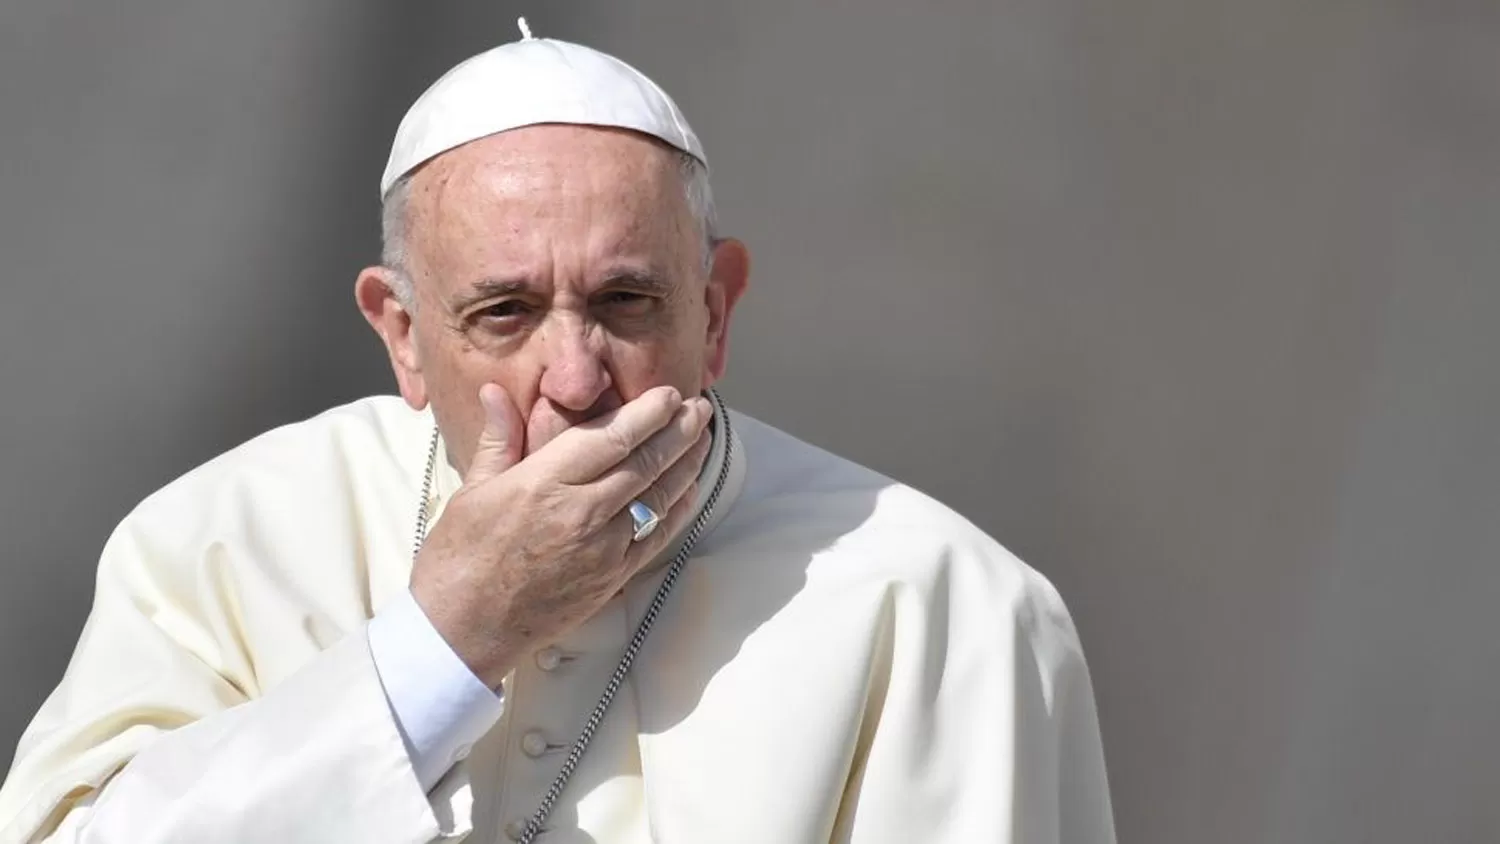 SIN PALABRAS. El Papa Francisco no opinará sobre los dichos del ex nuncio